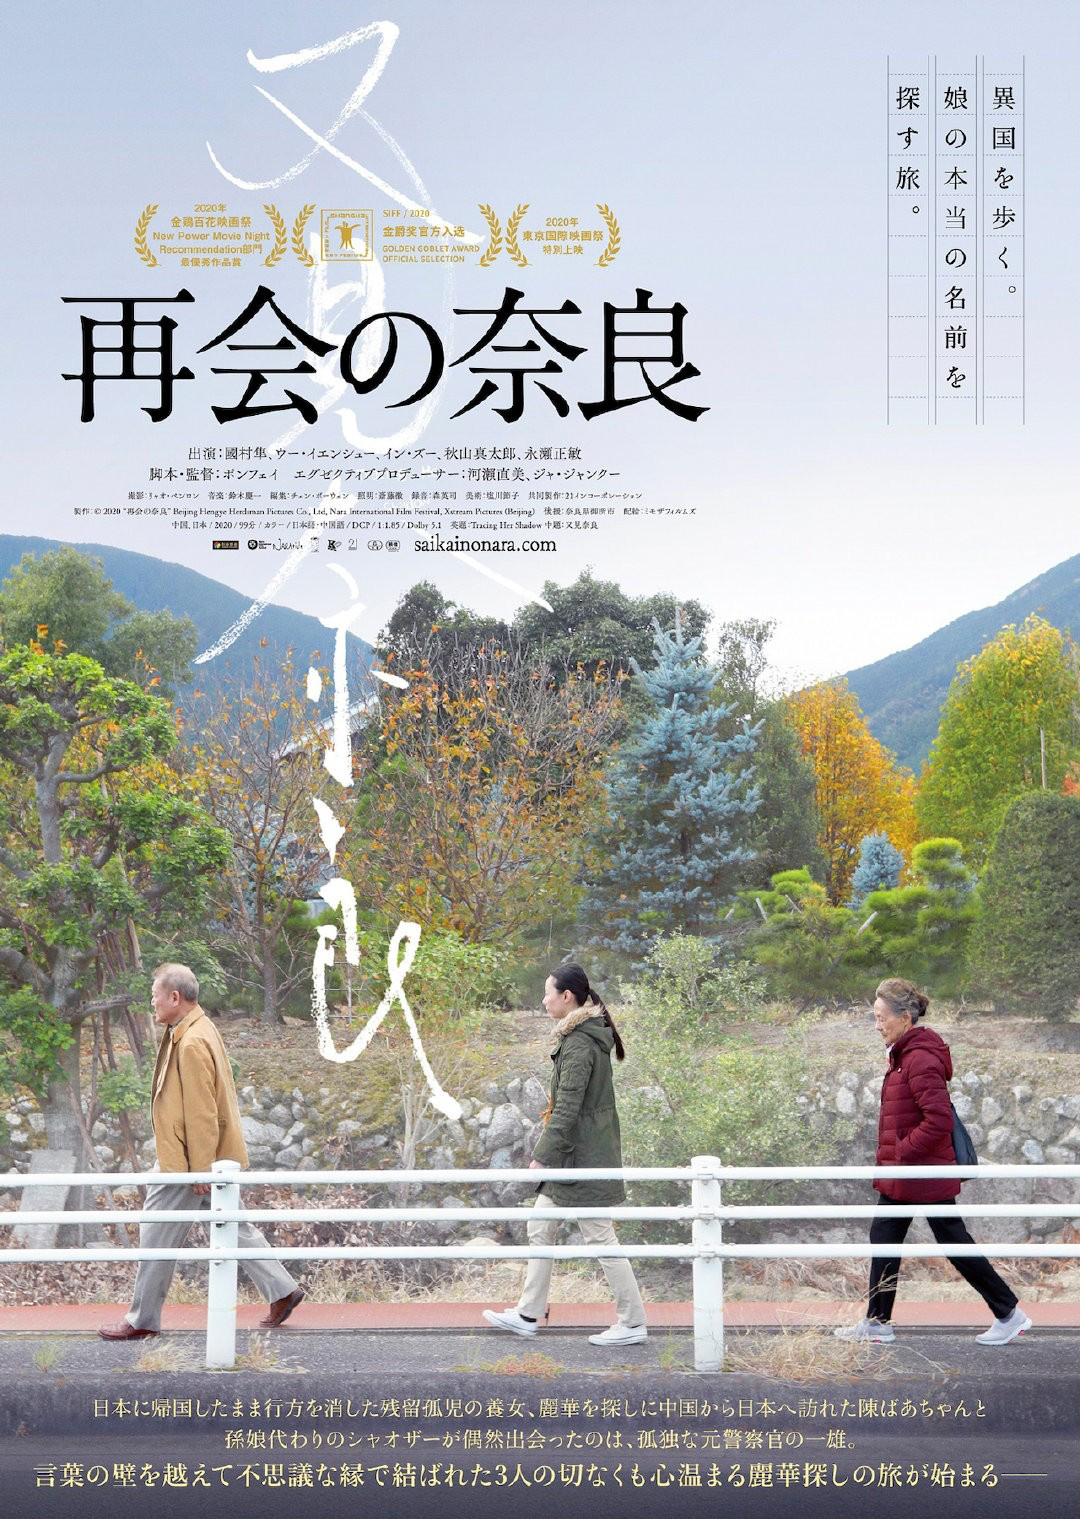 《又见奈良》明年1月起在日本上映 先登奈良院线